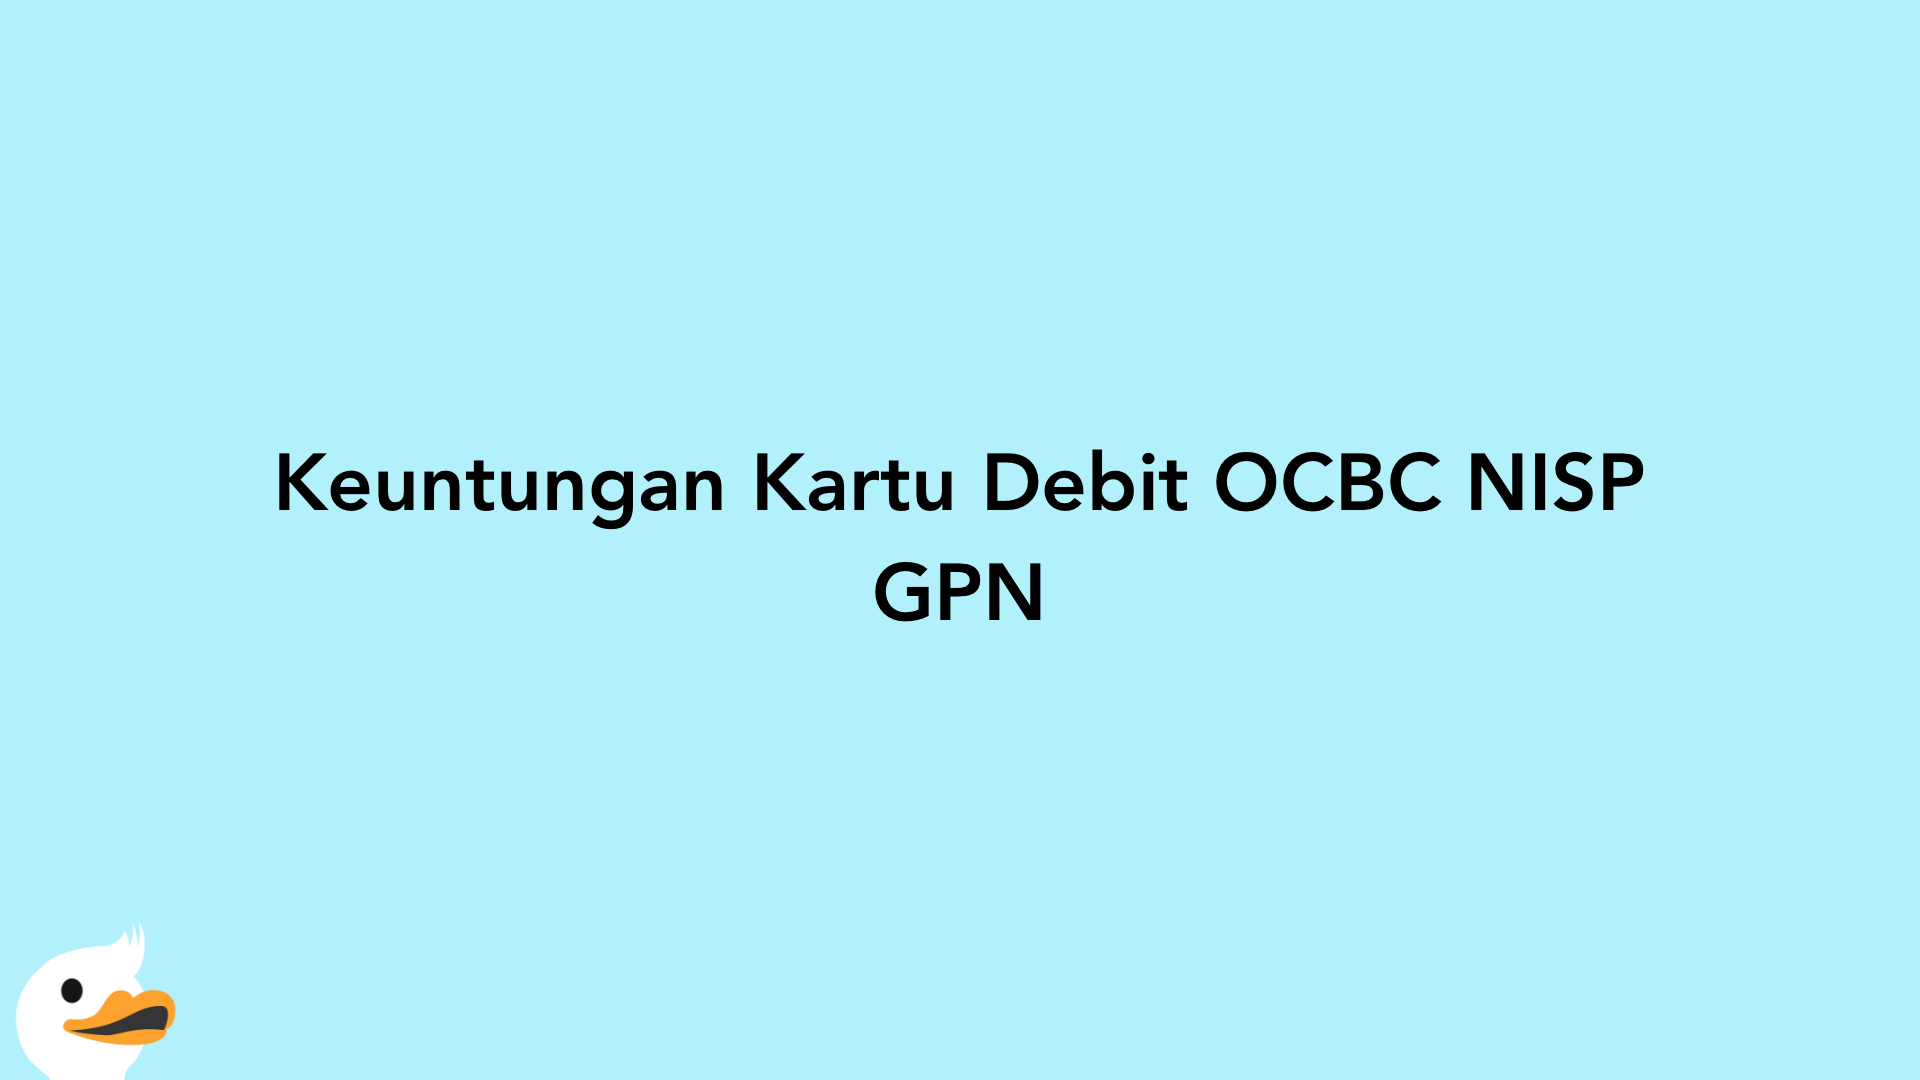 Keuntungan Kartu Debit OCBC NISP GPN